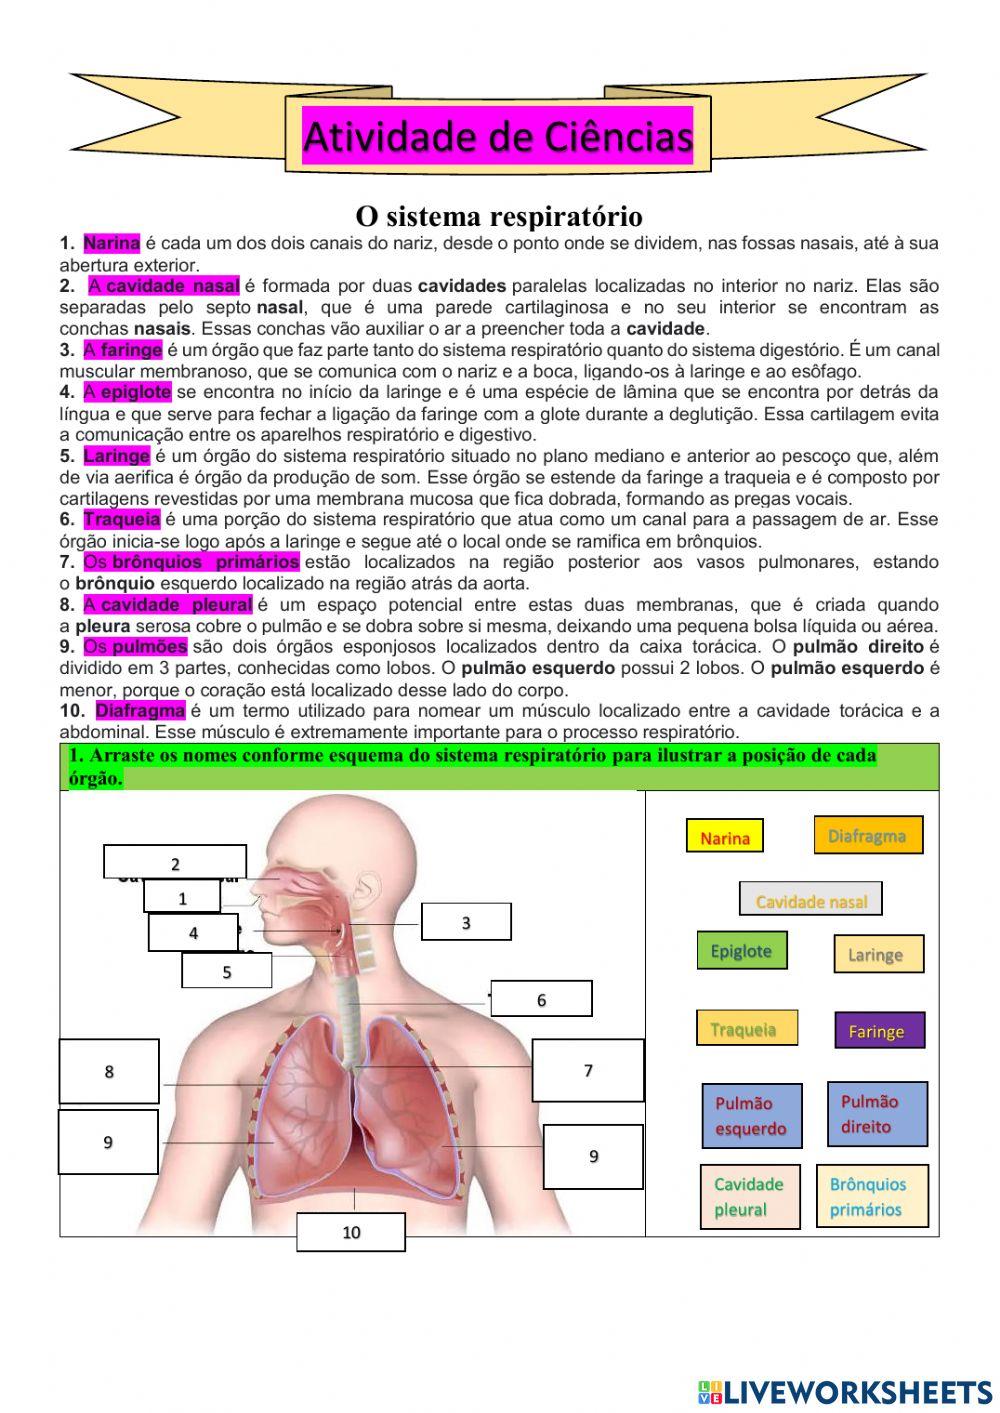 Ciências: O sistema respiratório